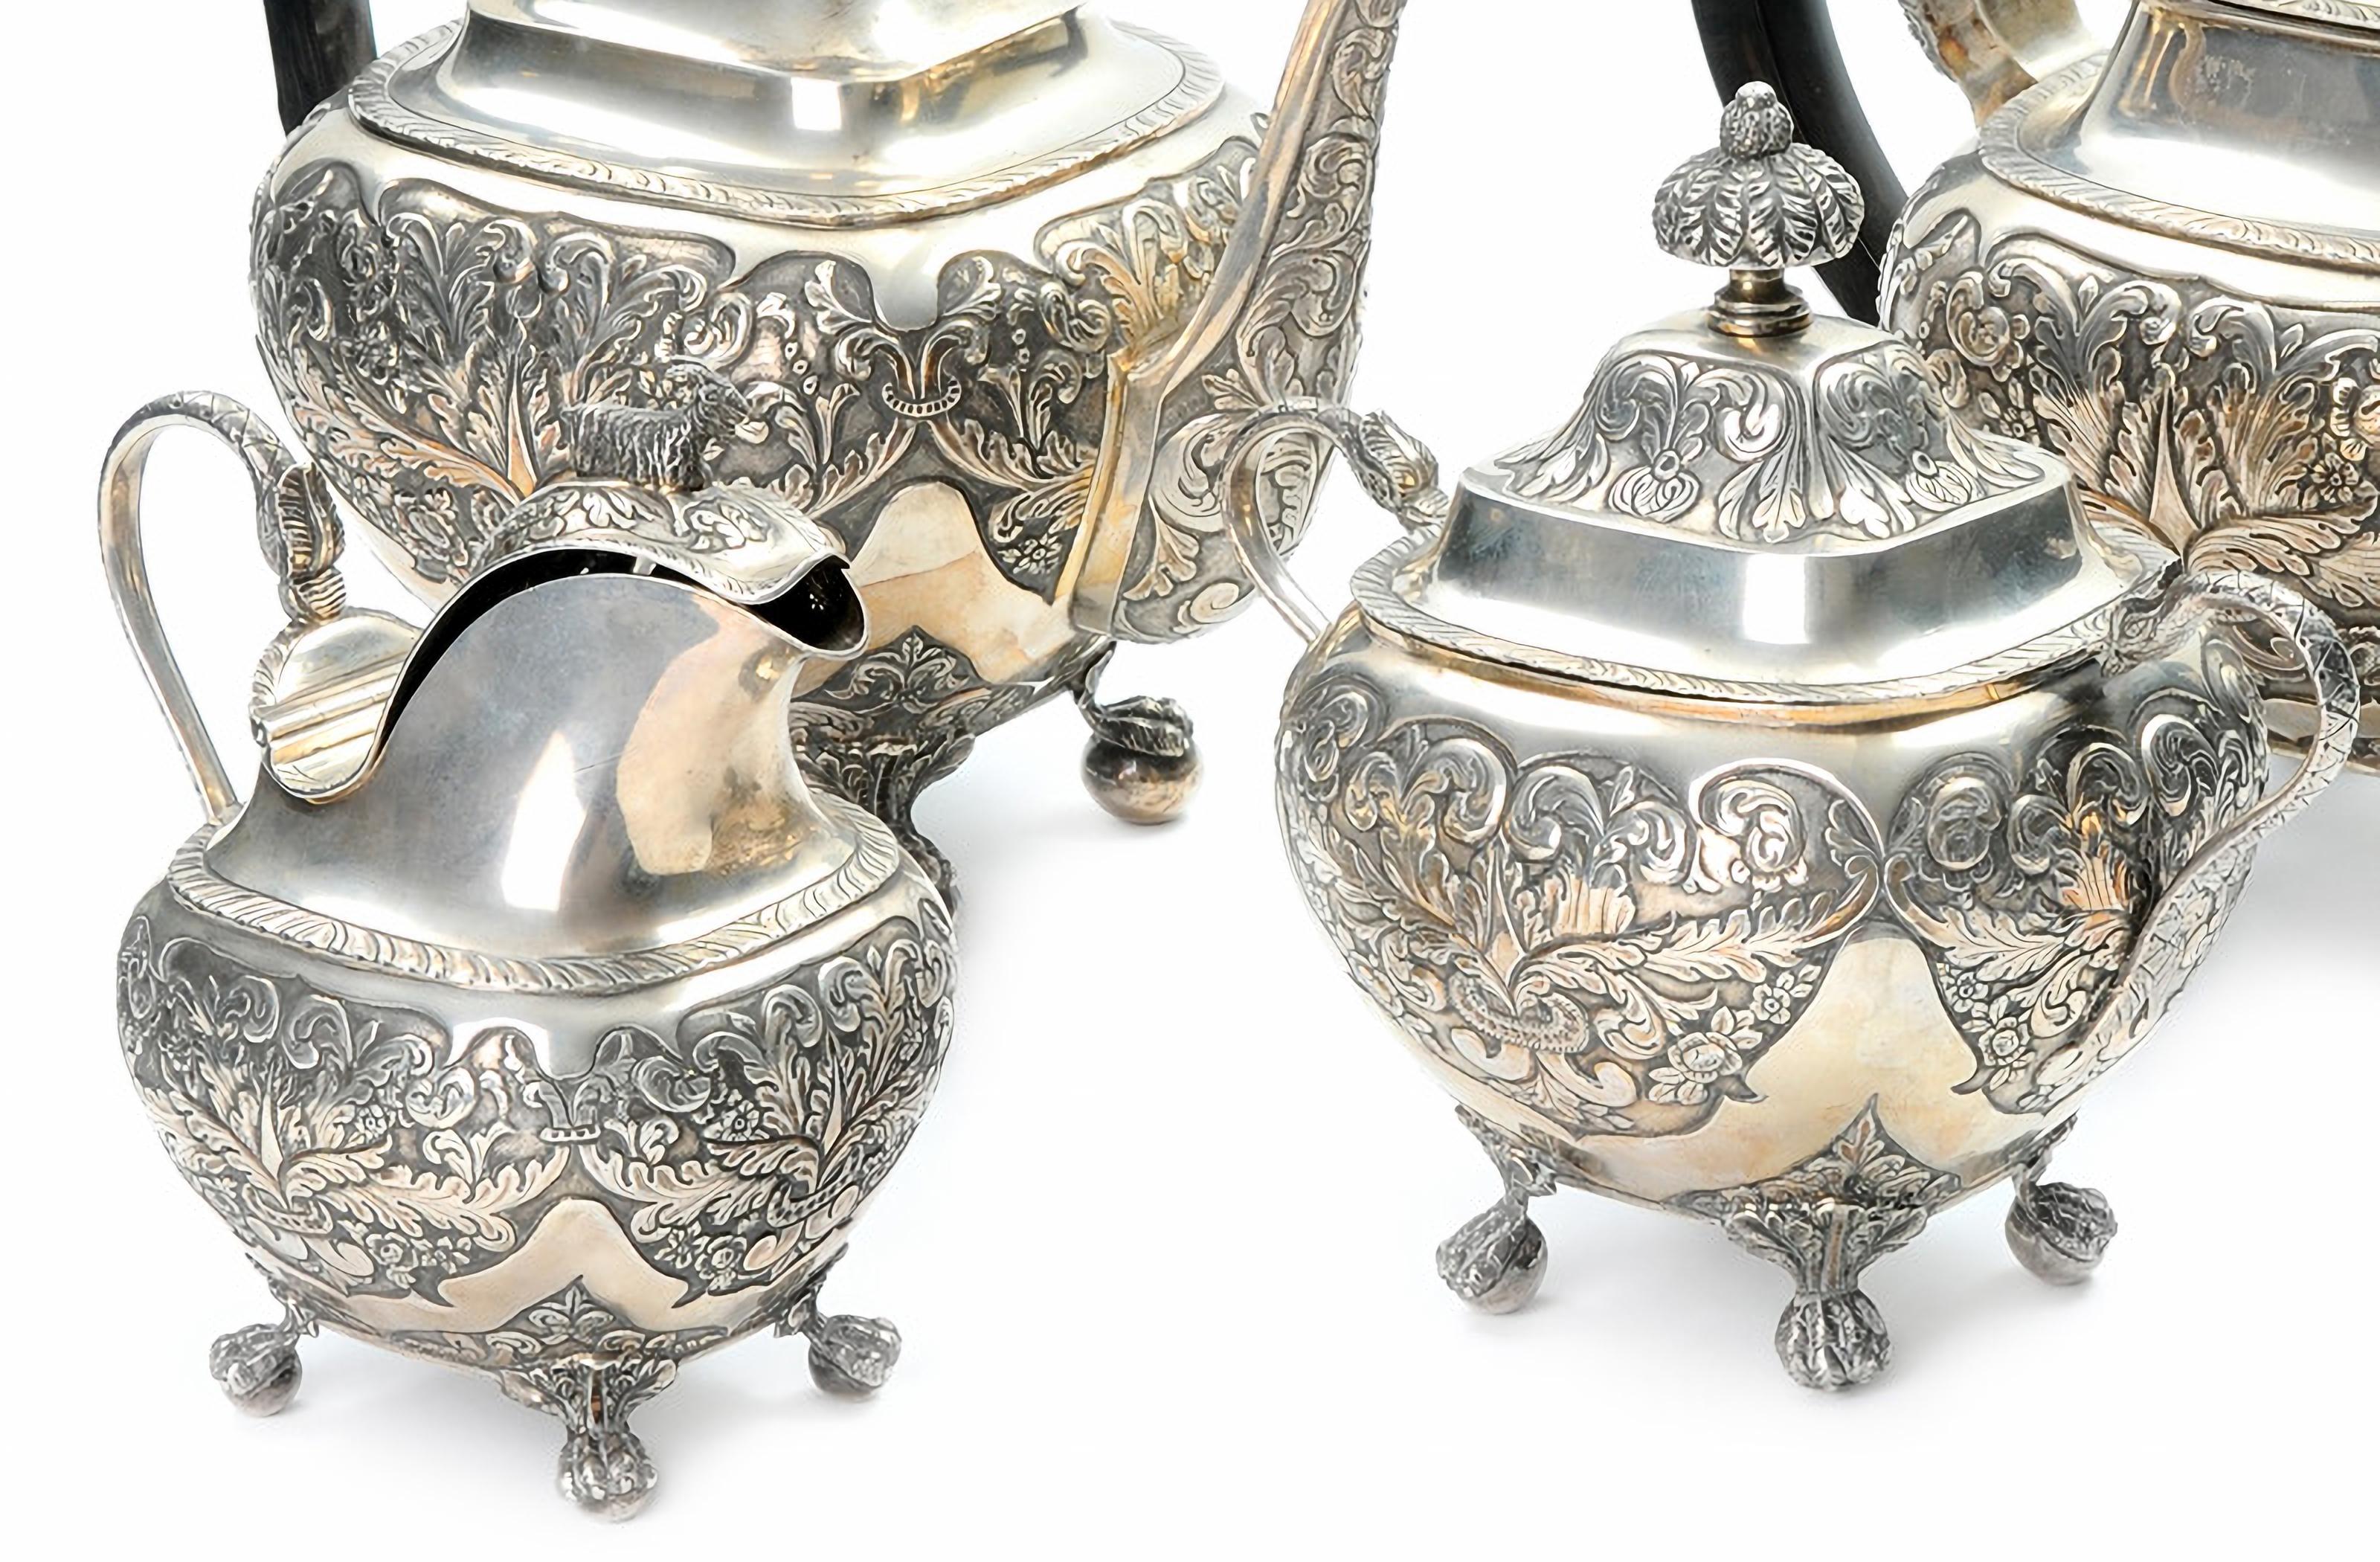 Service à thé et à café en argent portugais
19ème siècle
composé d'une théière, d'une cafetière, d'un pot à lait et d'un sucrier. Corps abondamment décoré de motifs floraux. Poignées en bois de rose. Marque d'essai de Lisbonne (L-41) utilisée de